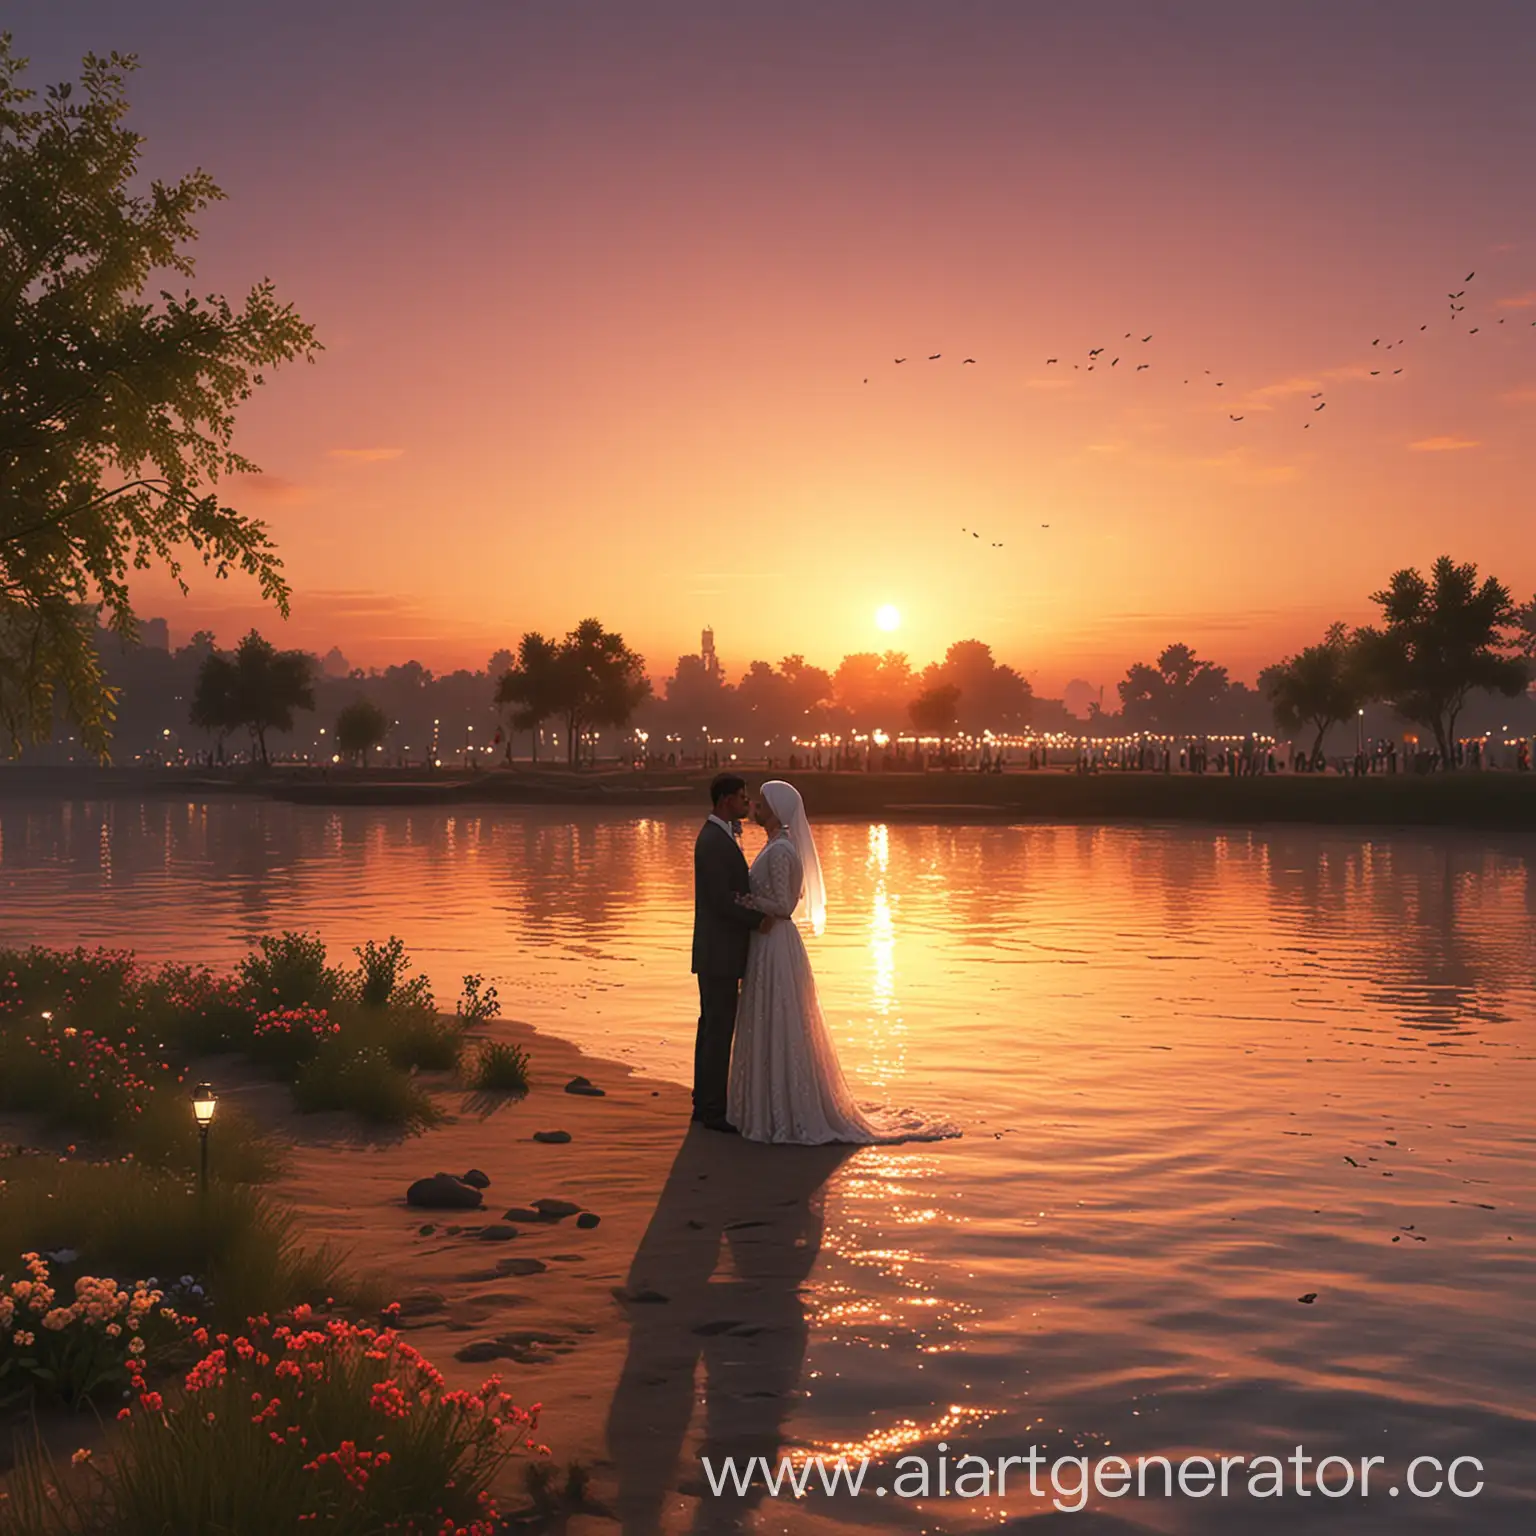 Мусульманская свадьба на берегу реки, закат, анимационный стиль